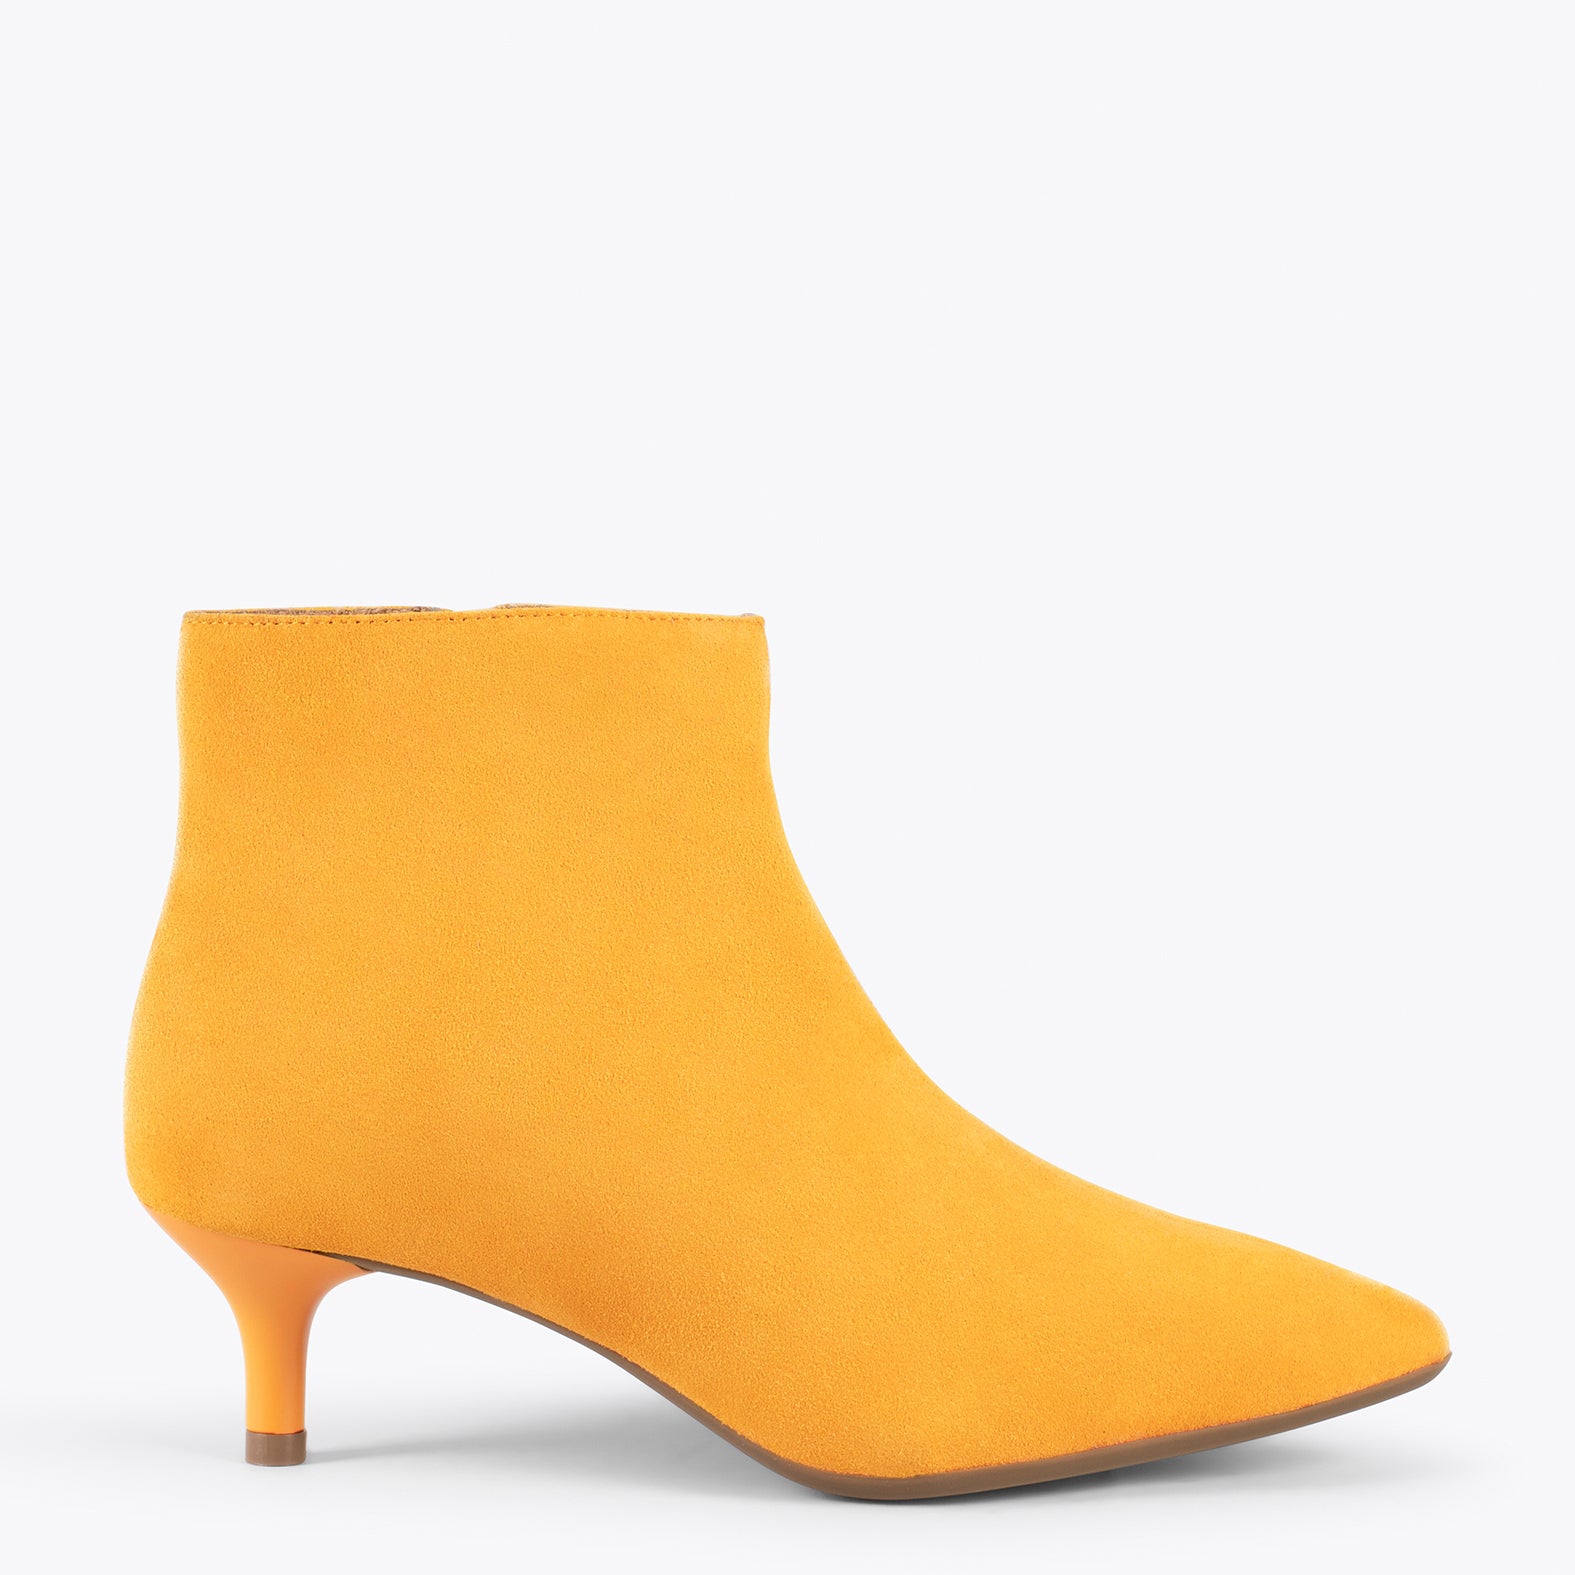 OUTFIT – YELLOW elegant low heel booties | miMaO ®